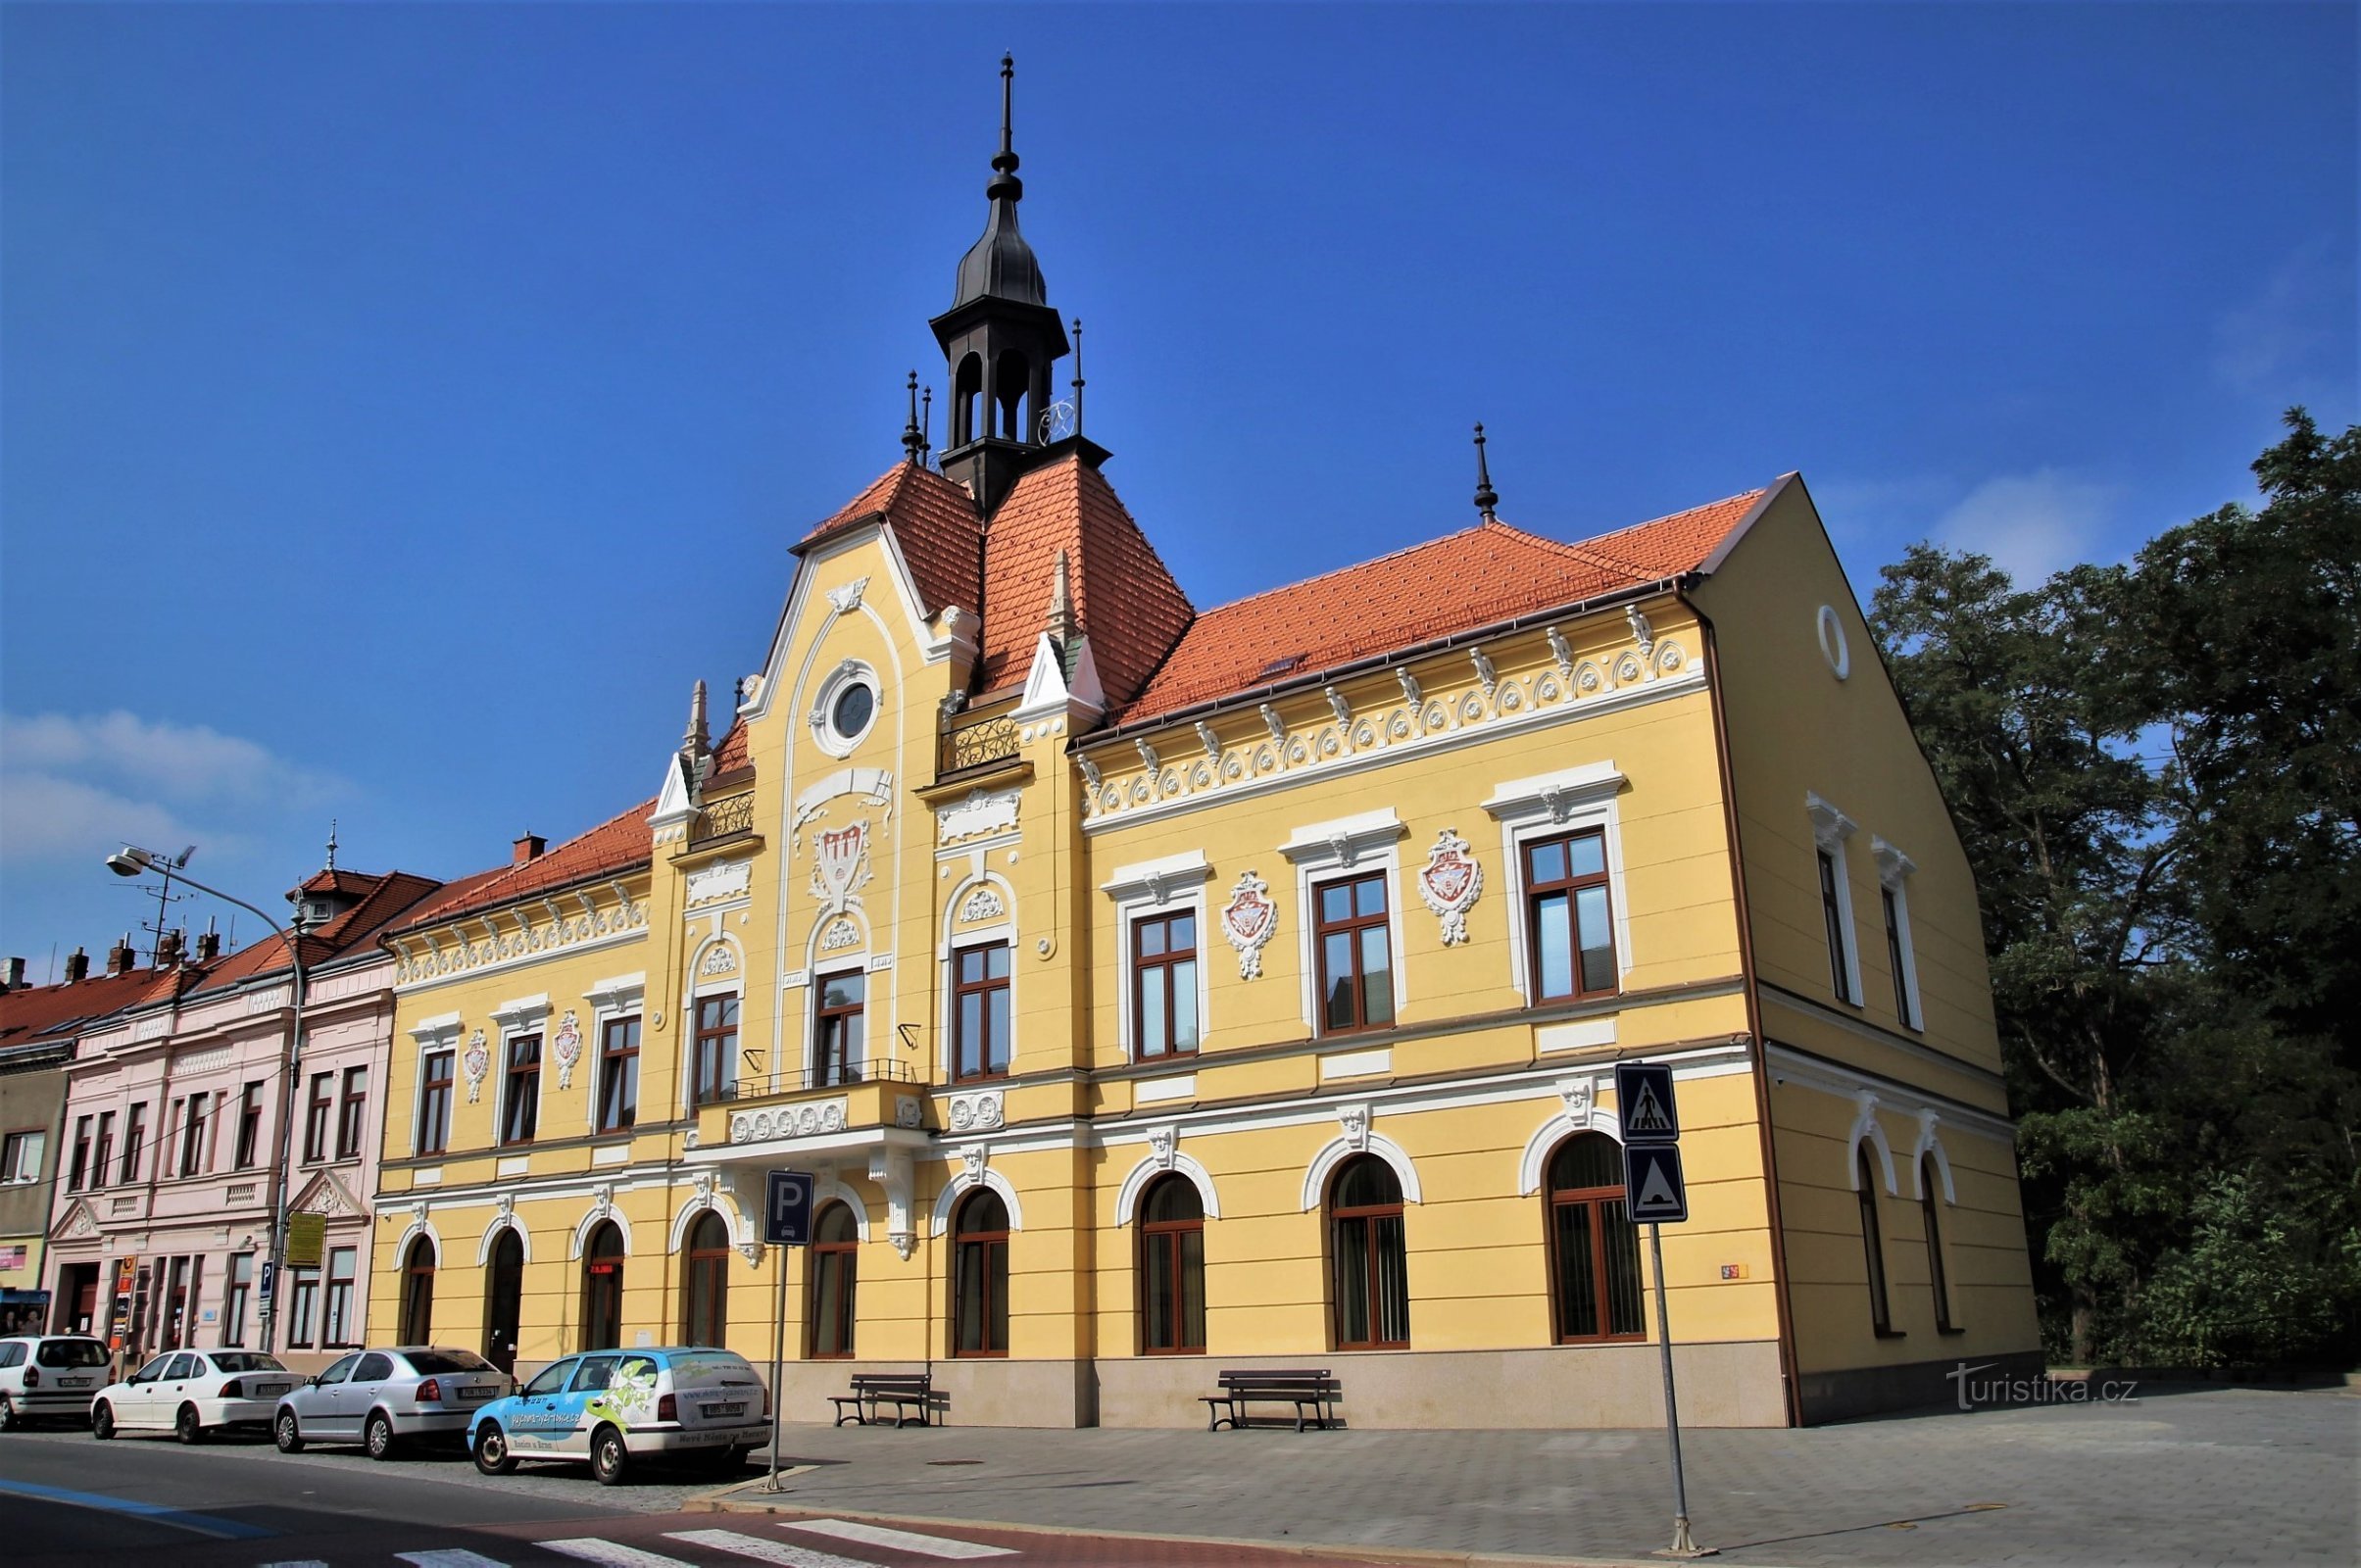 Pohořelice - Centru cultural și de informare